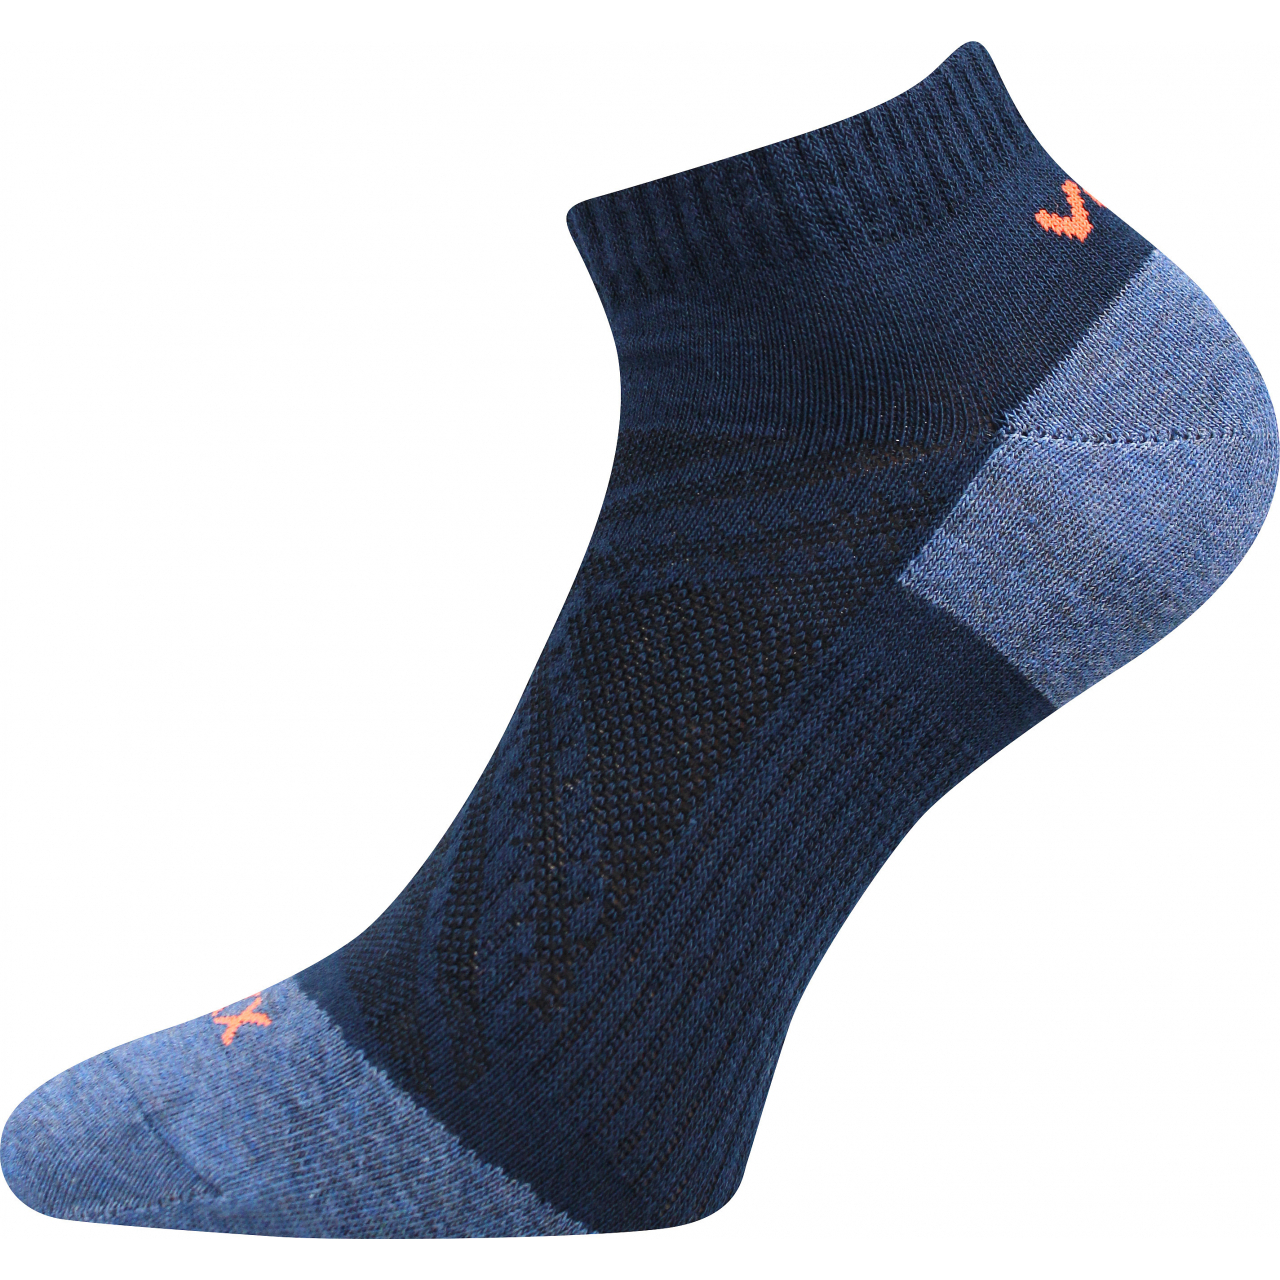 Ponožky slabé unisex Voxx Rex 15 - tmavě modré, 39-42